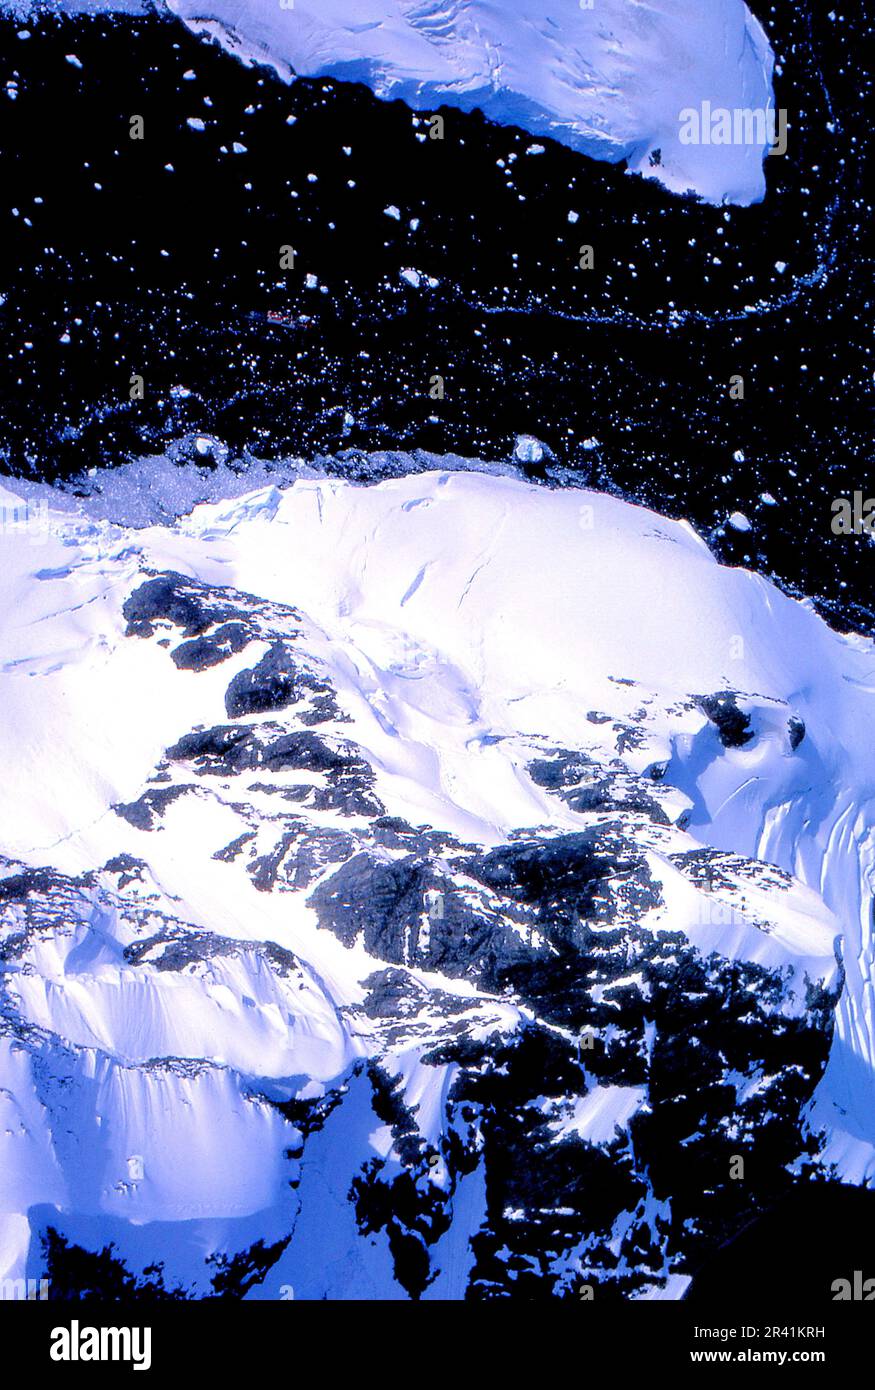 Grahamland Antartide 1972 HMS Endurance centro cima del telaio tagliare un canale attraverso i pacchetti di ghiaccio iceberg in canali contro il mare blu scuro si deve guardare davvero duro, ma la vernice rossa della nave può essere visto Foto Stock